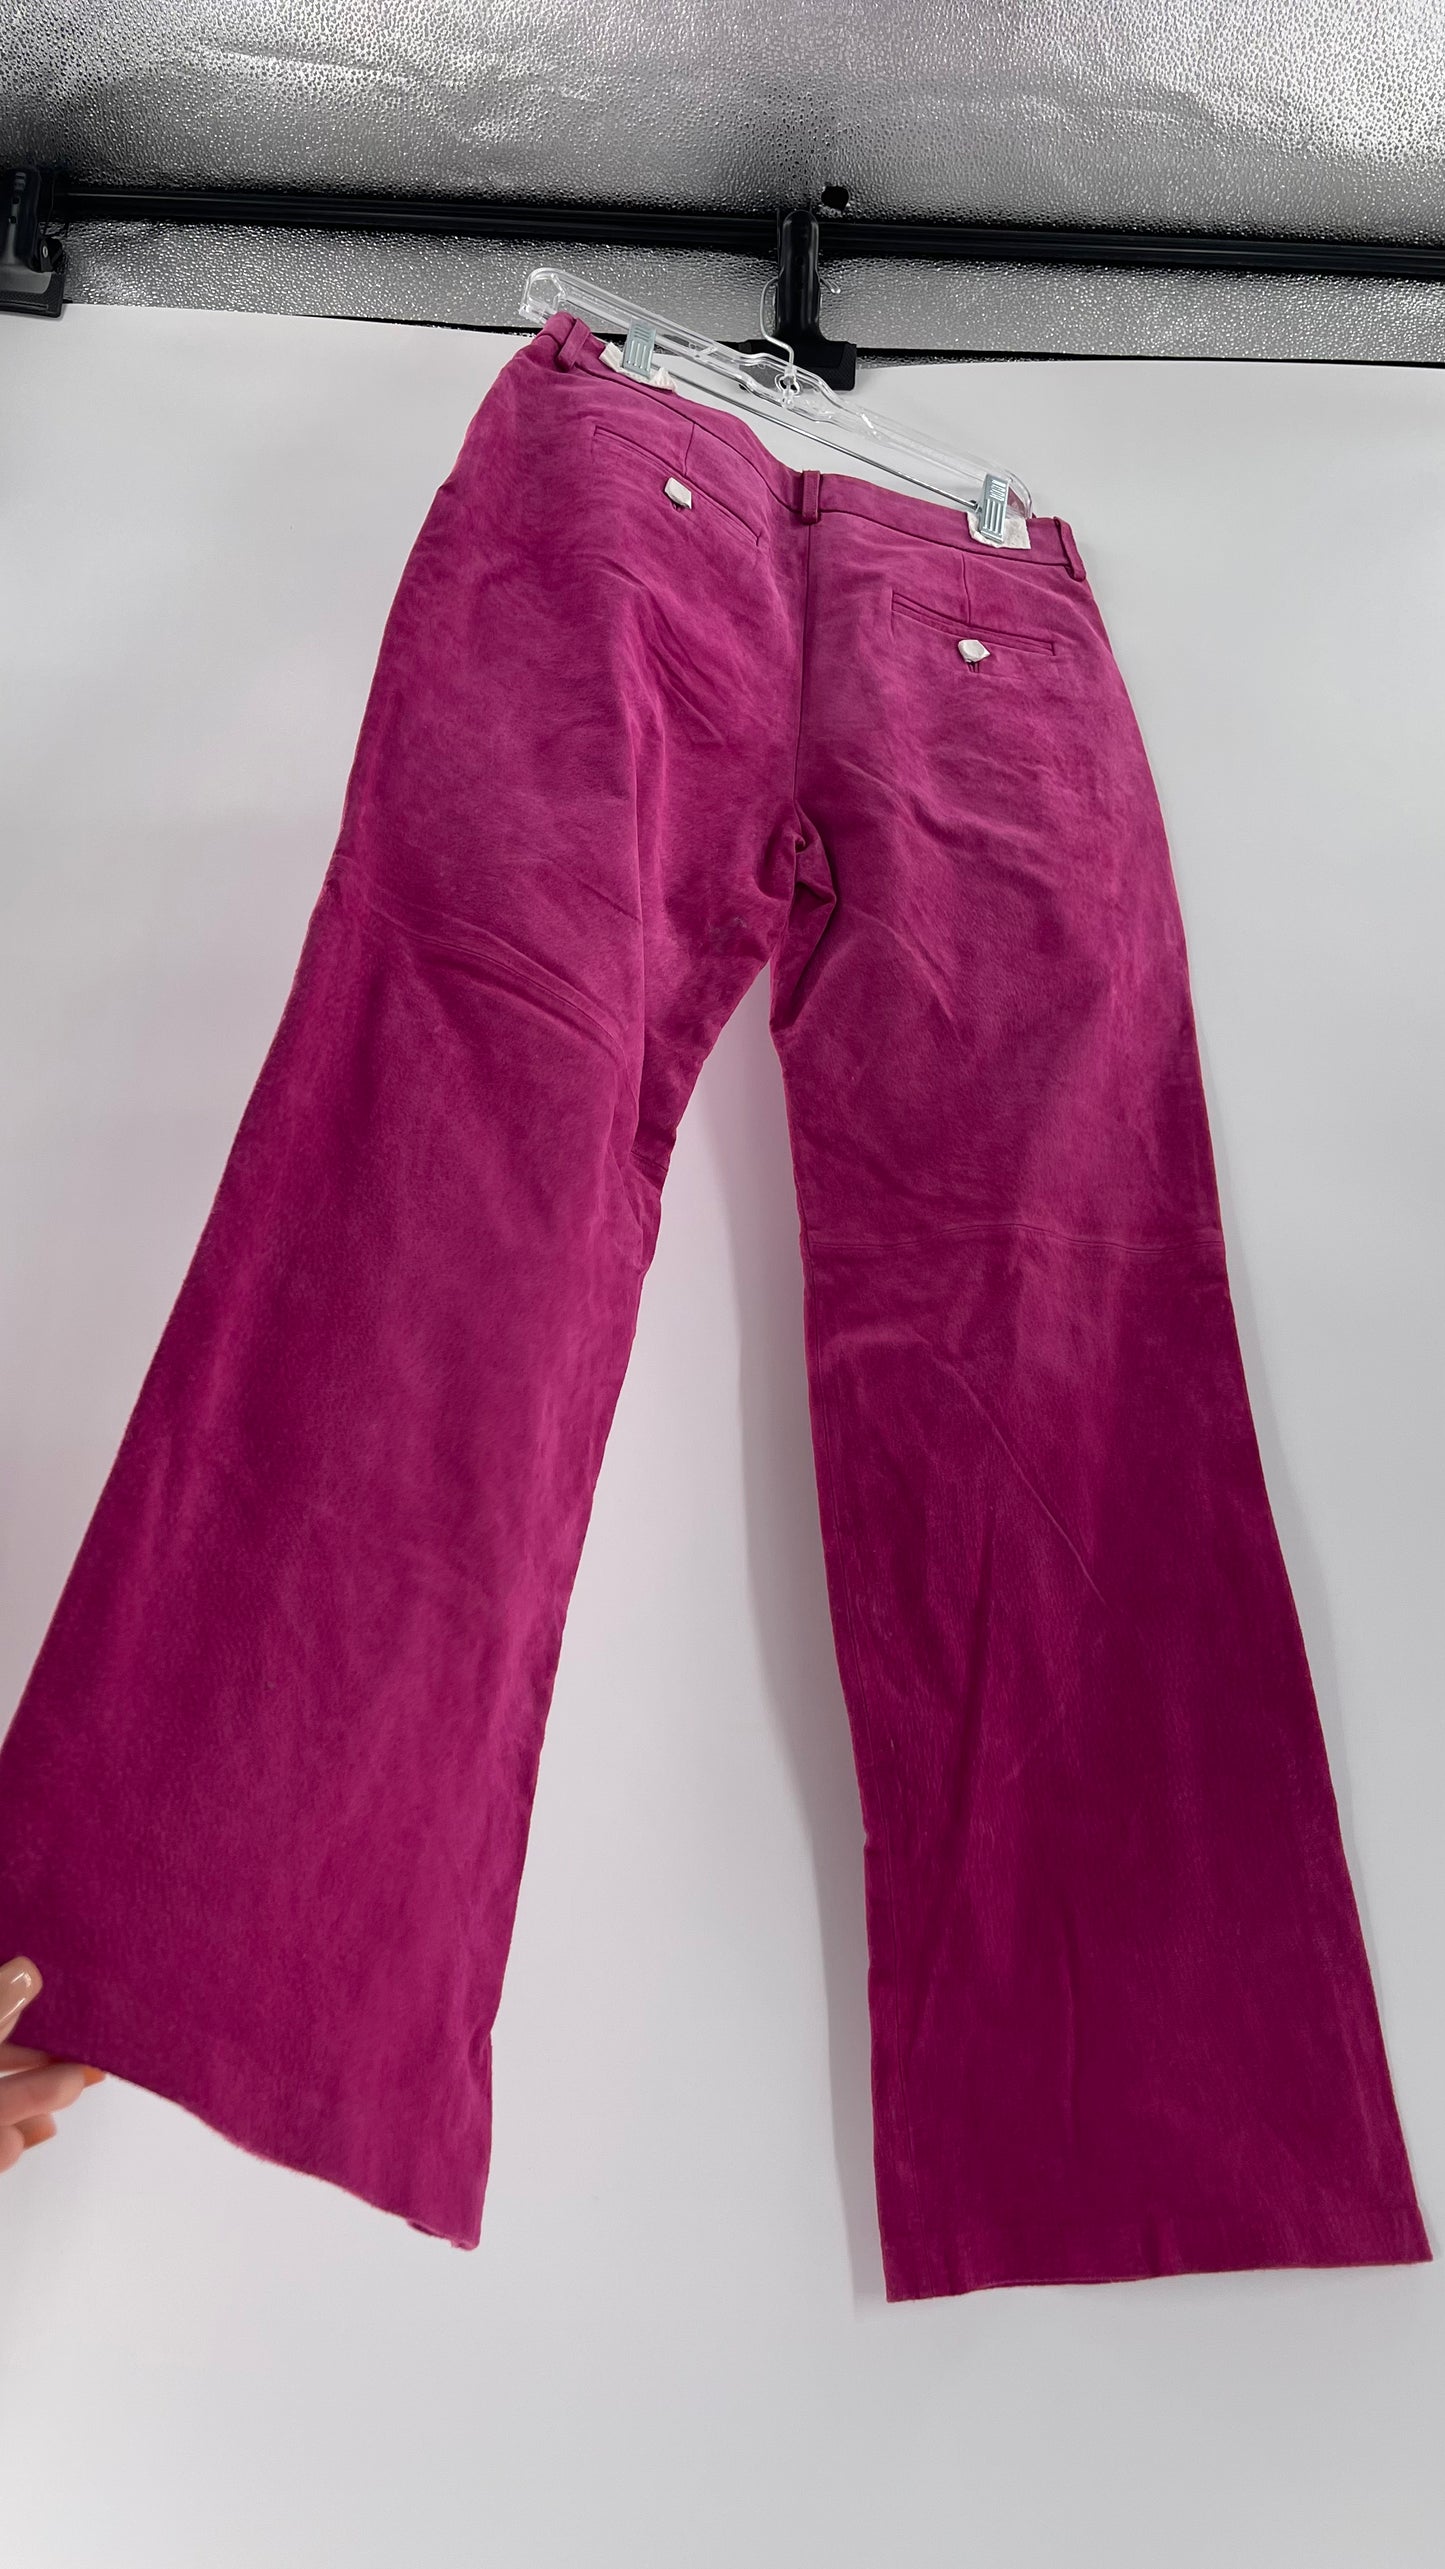 Vintage J.G. Hook Hot Pink 100% Genuine Leather Pants (Size 10)